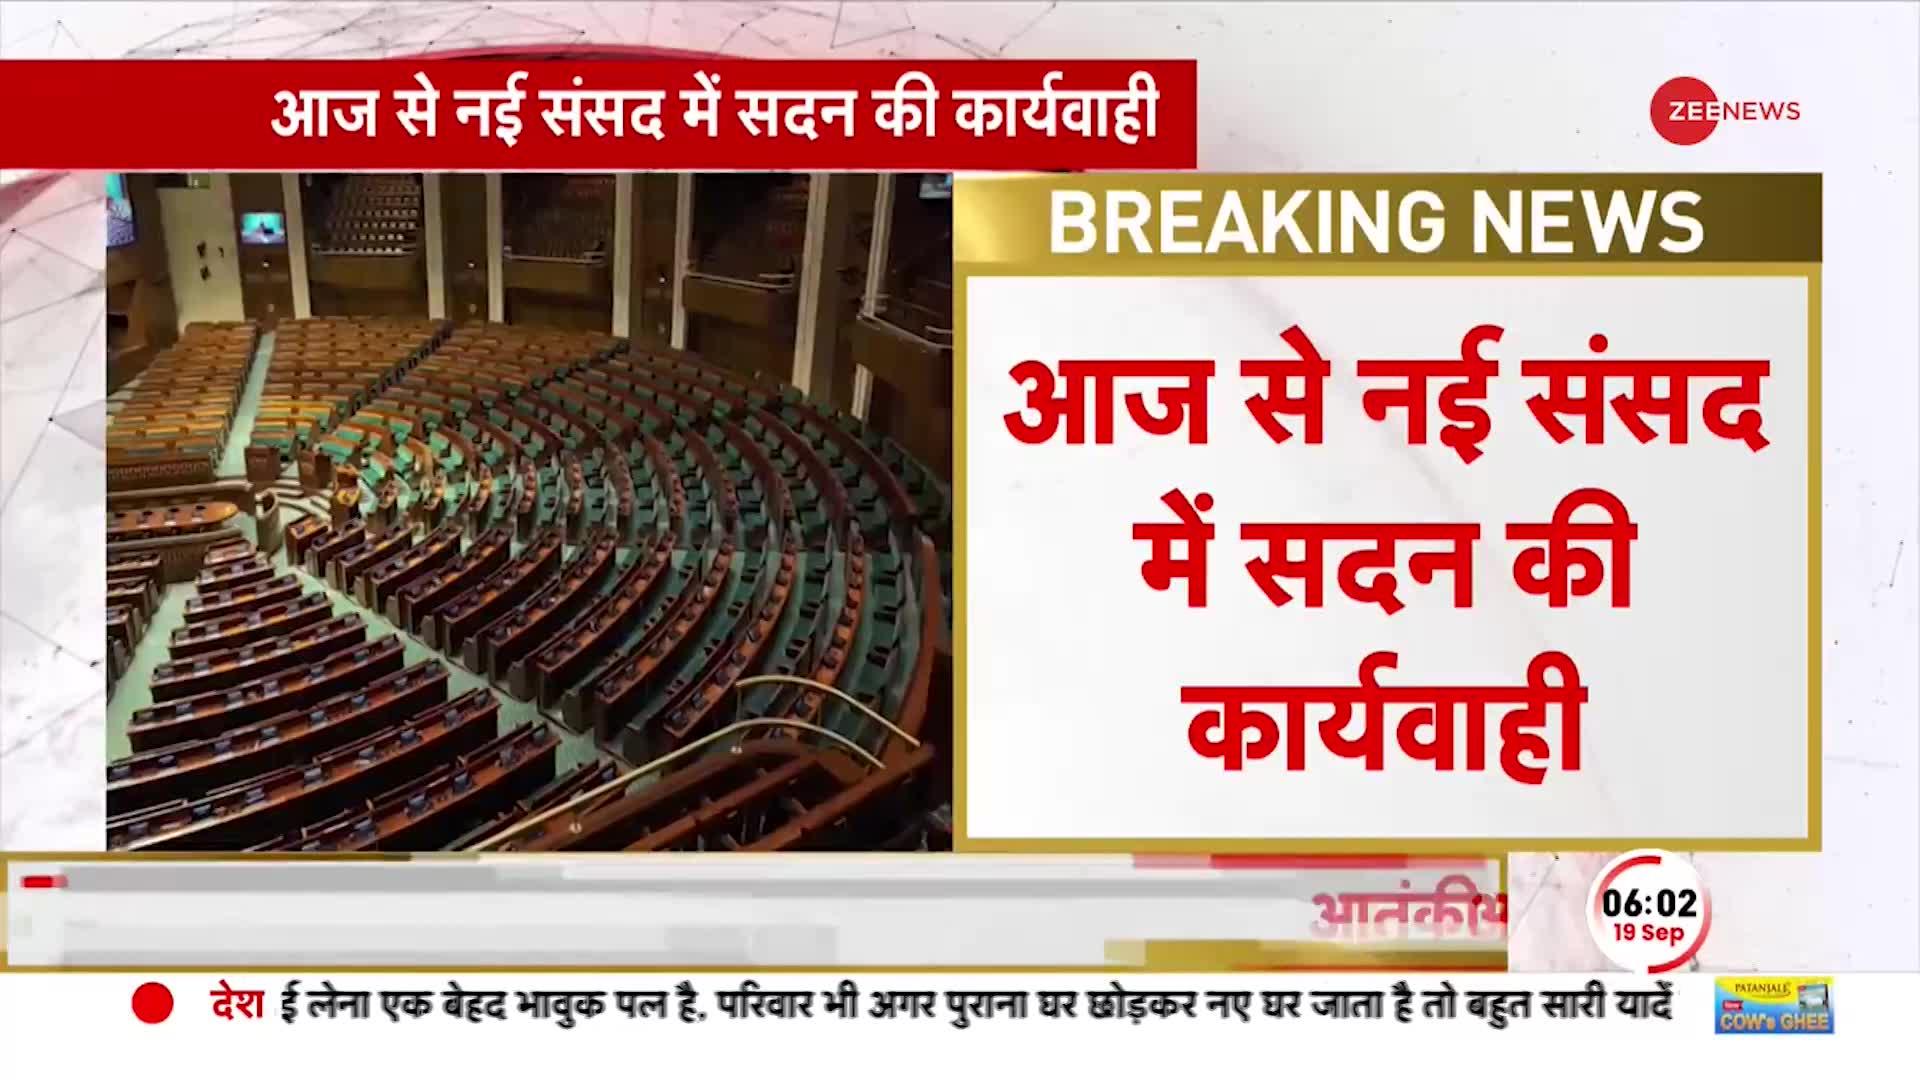 Big Breaking: नई संसद में विशेष सत्र, इस वक्त की बड़ी खबर